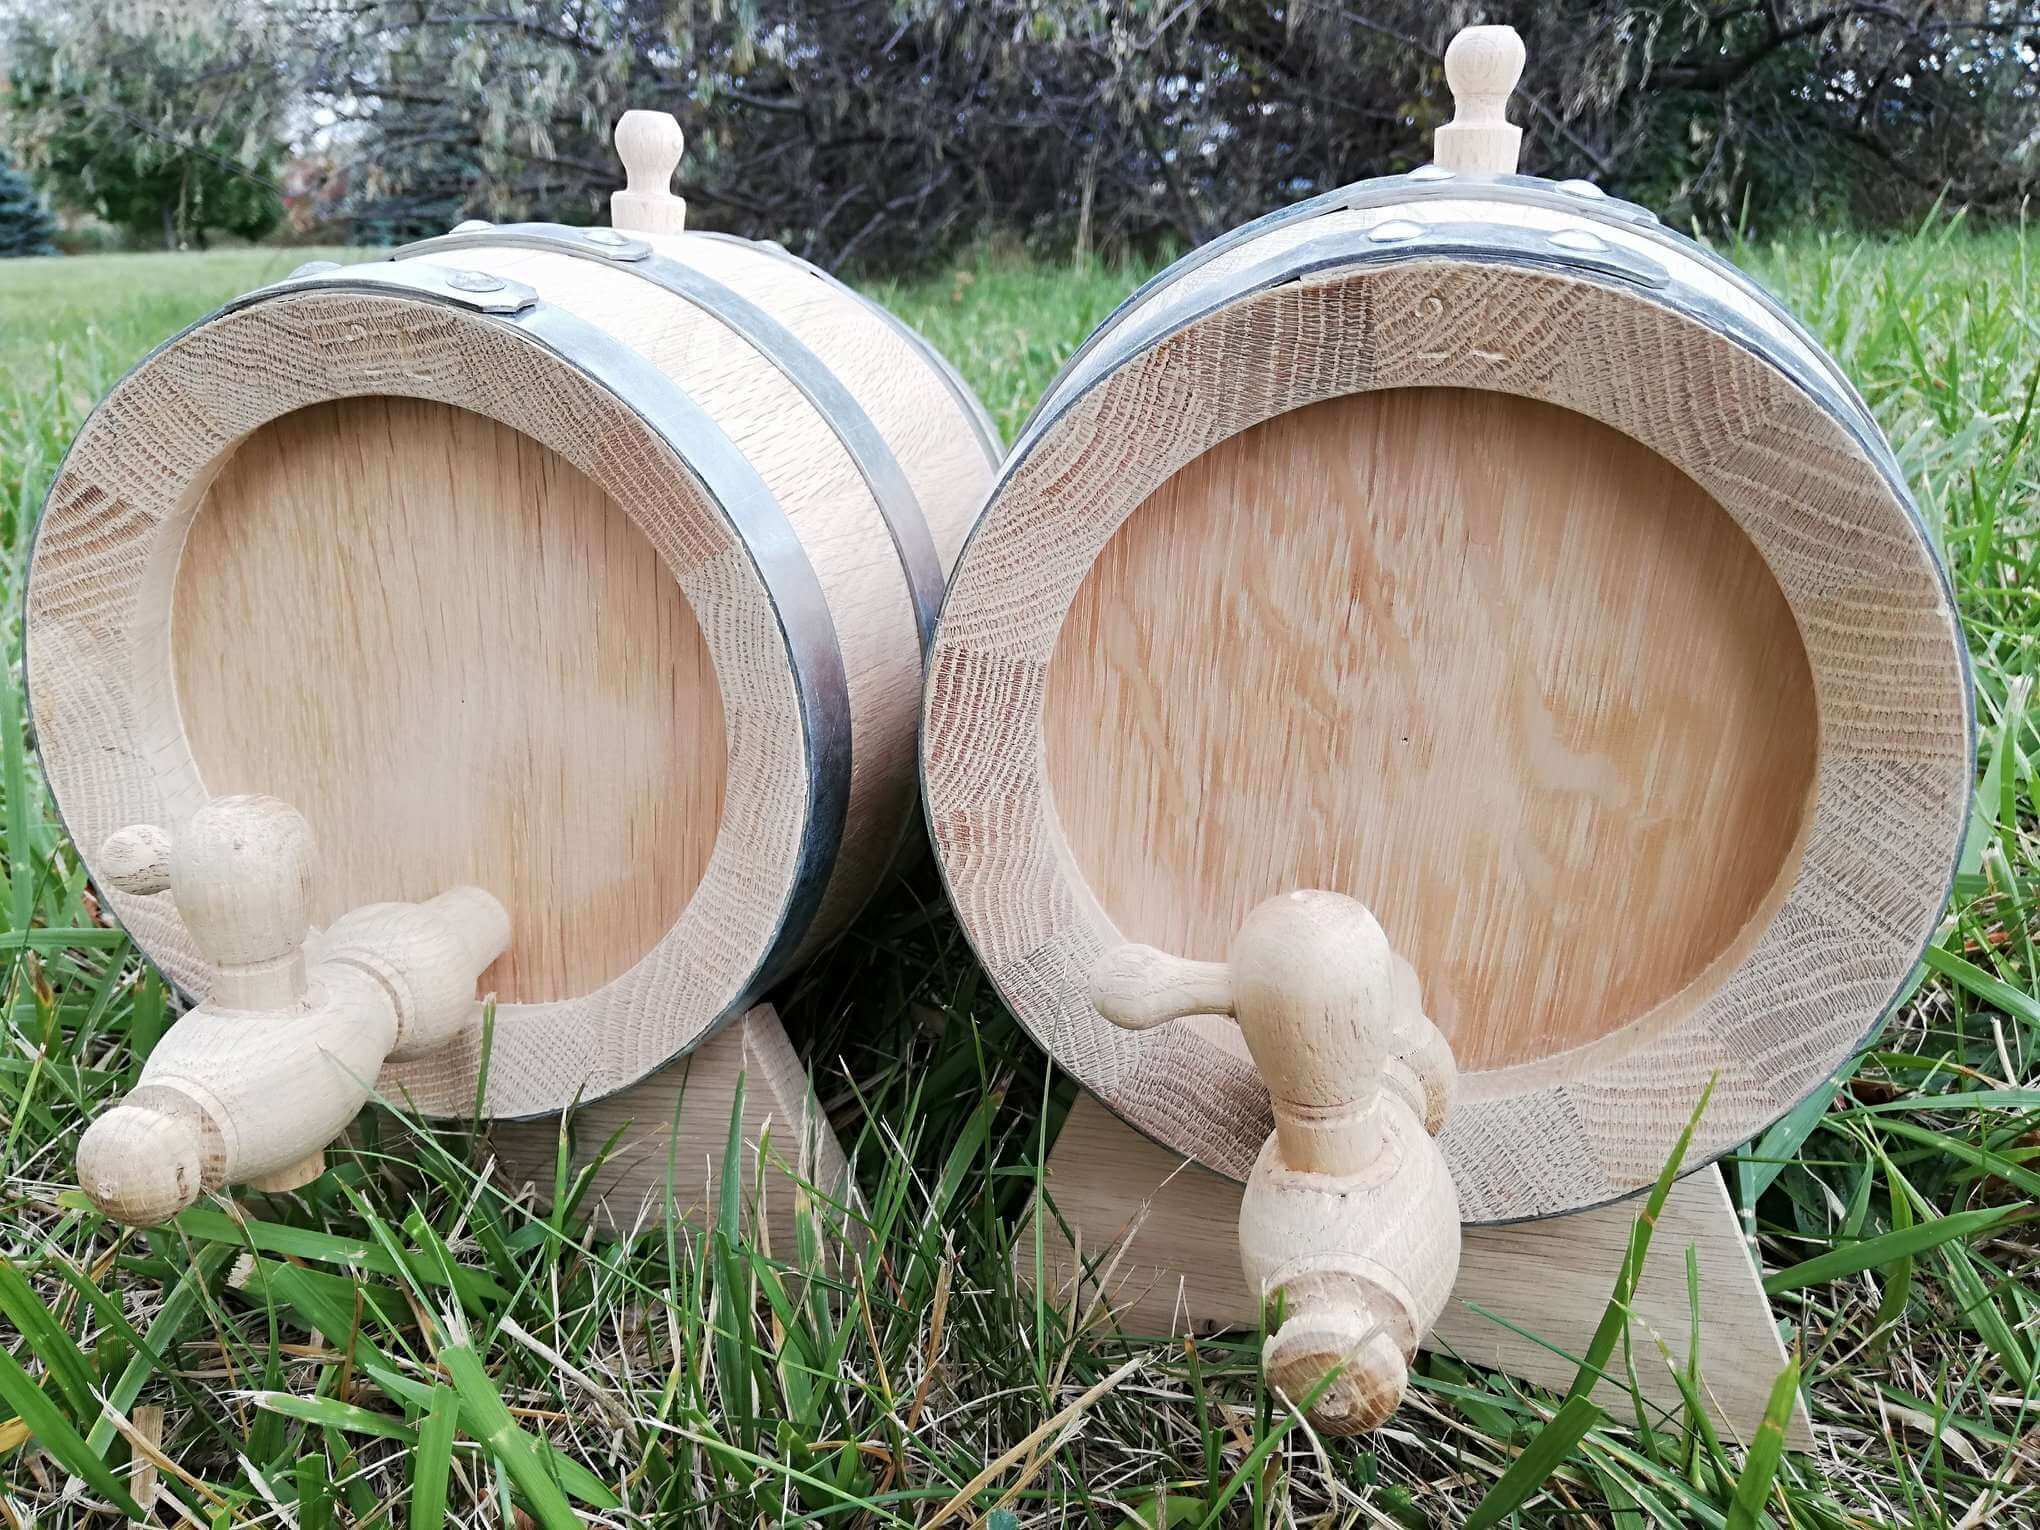 Set of Oak barrels 2x2L